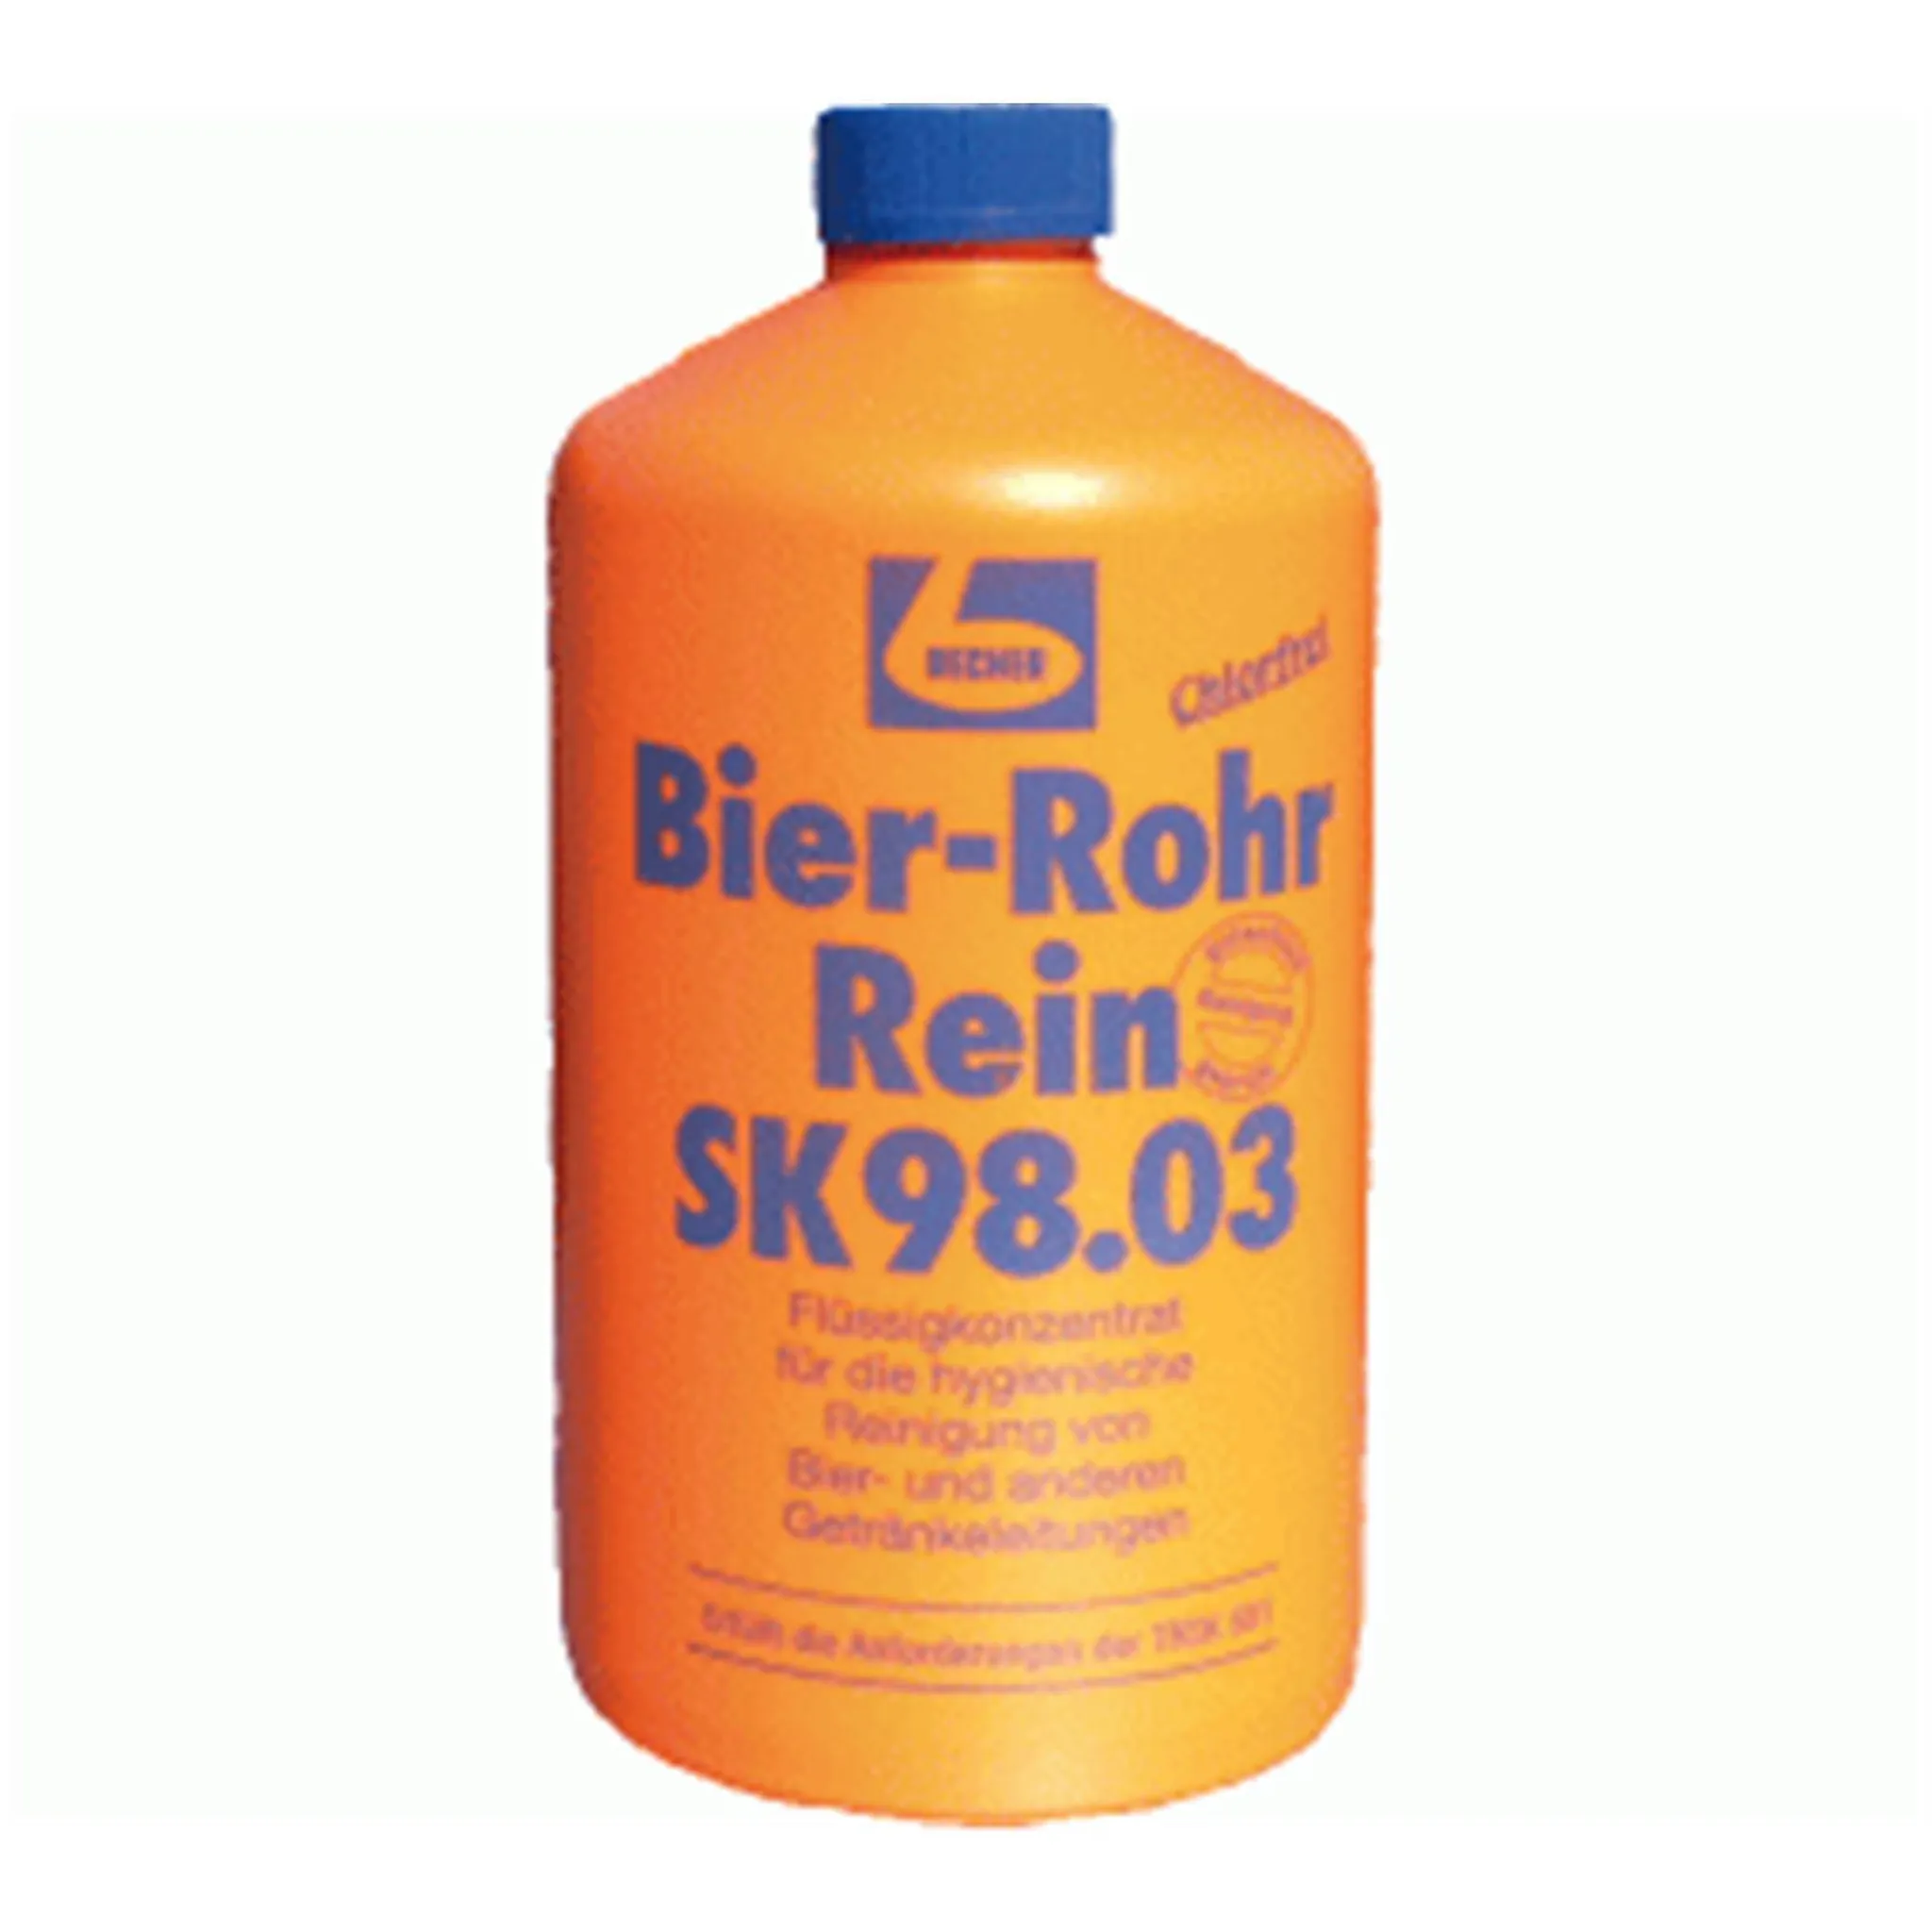 Dr. Becher Bier Rohr Rein/Leitung Rein Reinigungsmittel SK98.03 1